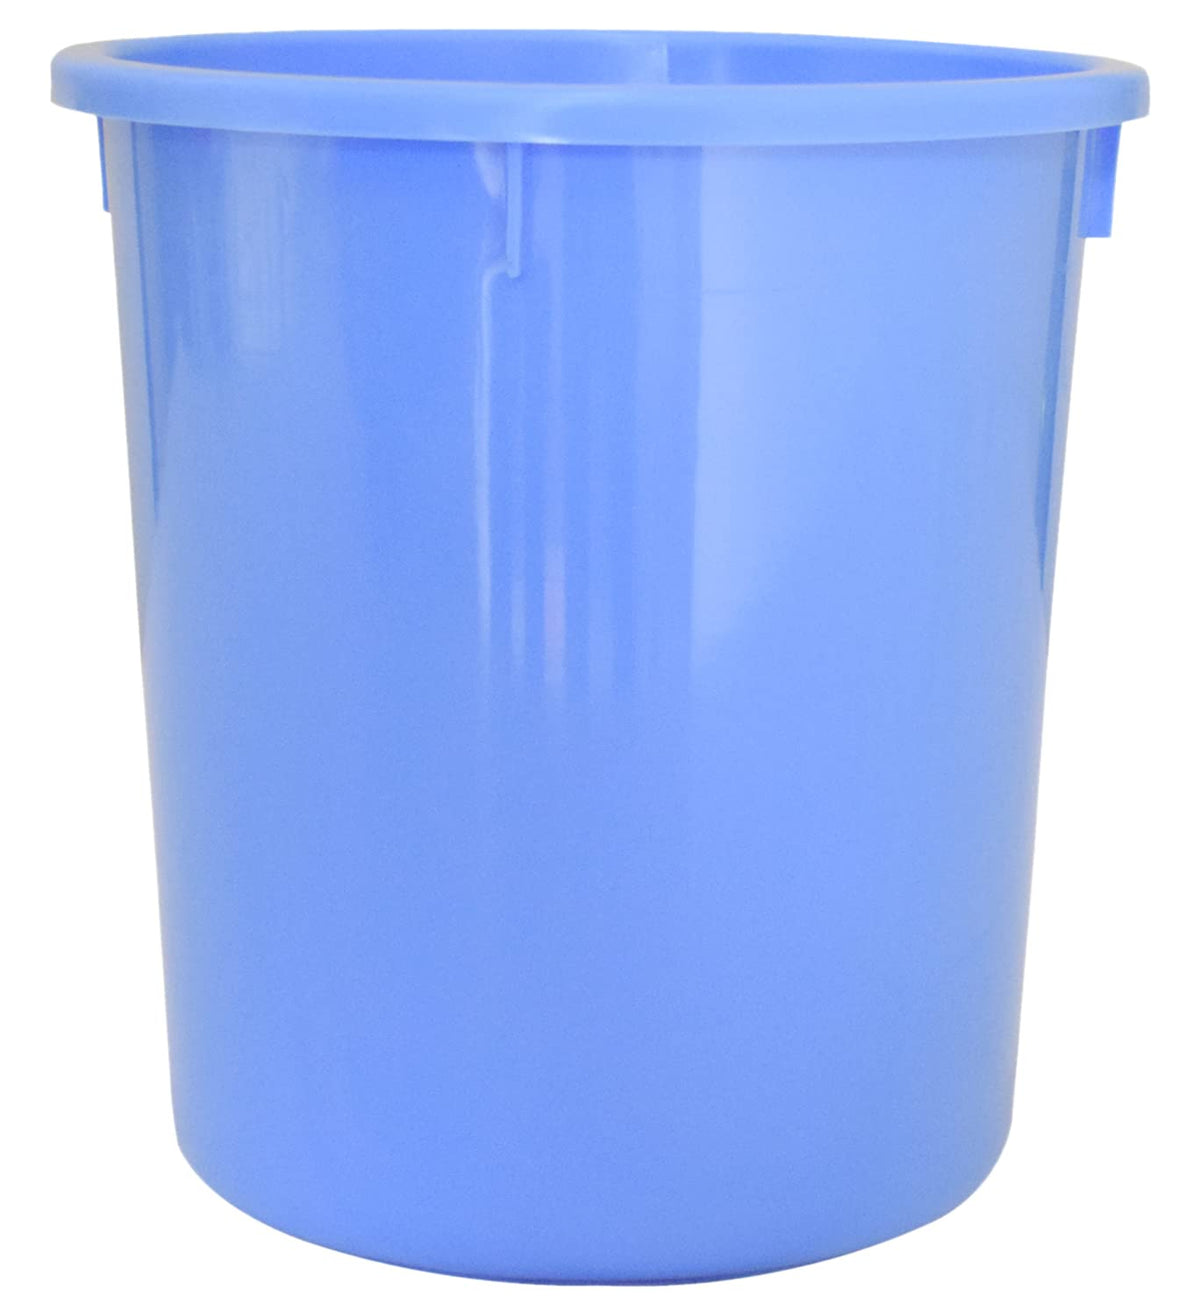 Heart Home Plastic Open Plastic Dustbin Without Lid|Trash Bin, Garbage Bin, Waste Bin, 5Ltr. (Blue)-47HH01038